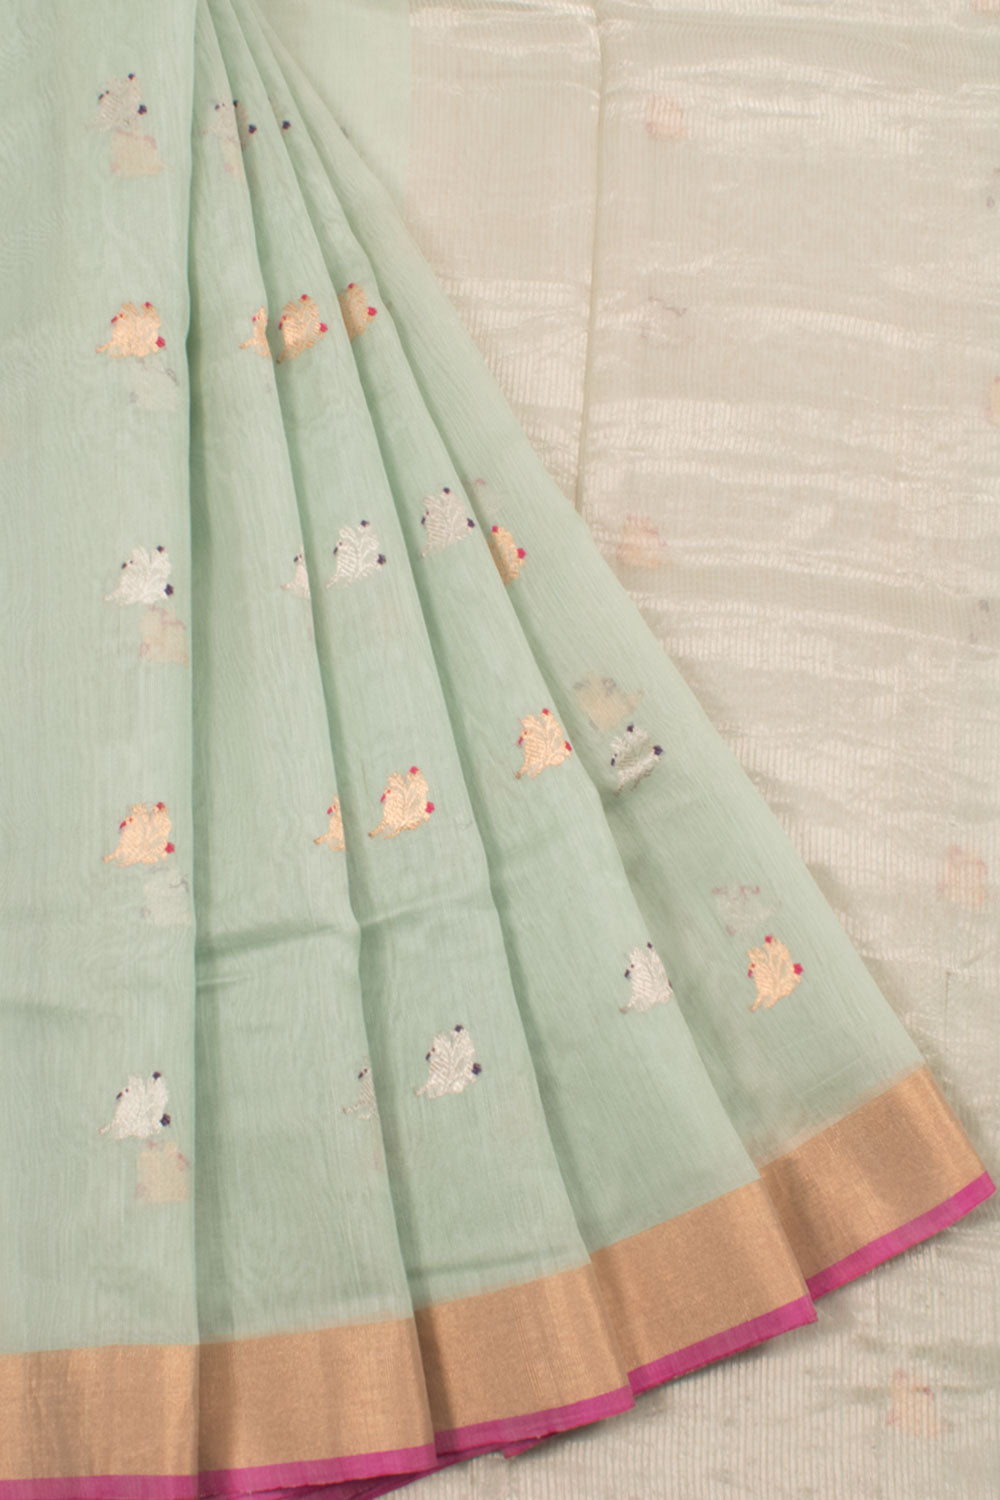 Handwoven Chanderi Silk Cotton Saree with Bird Motifs and Zari Border